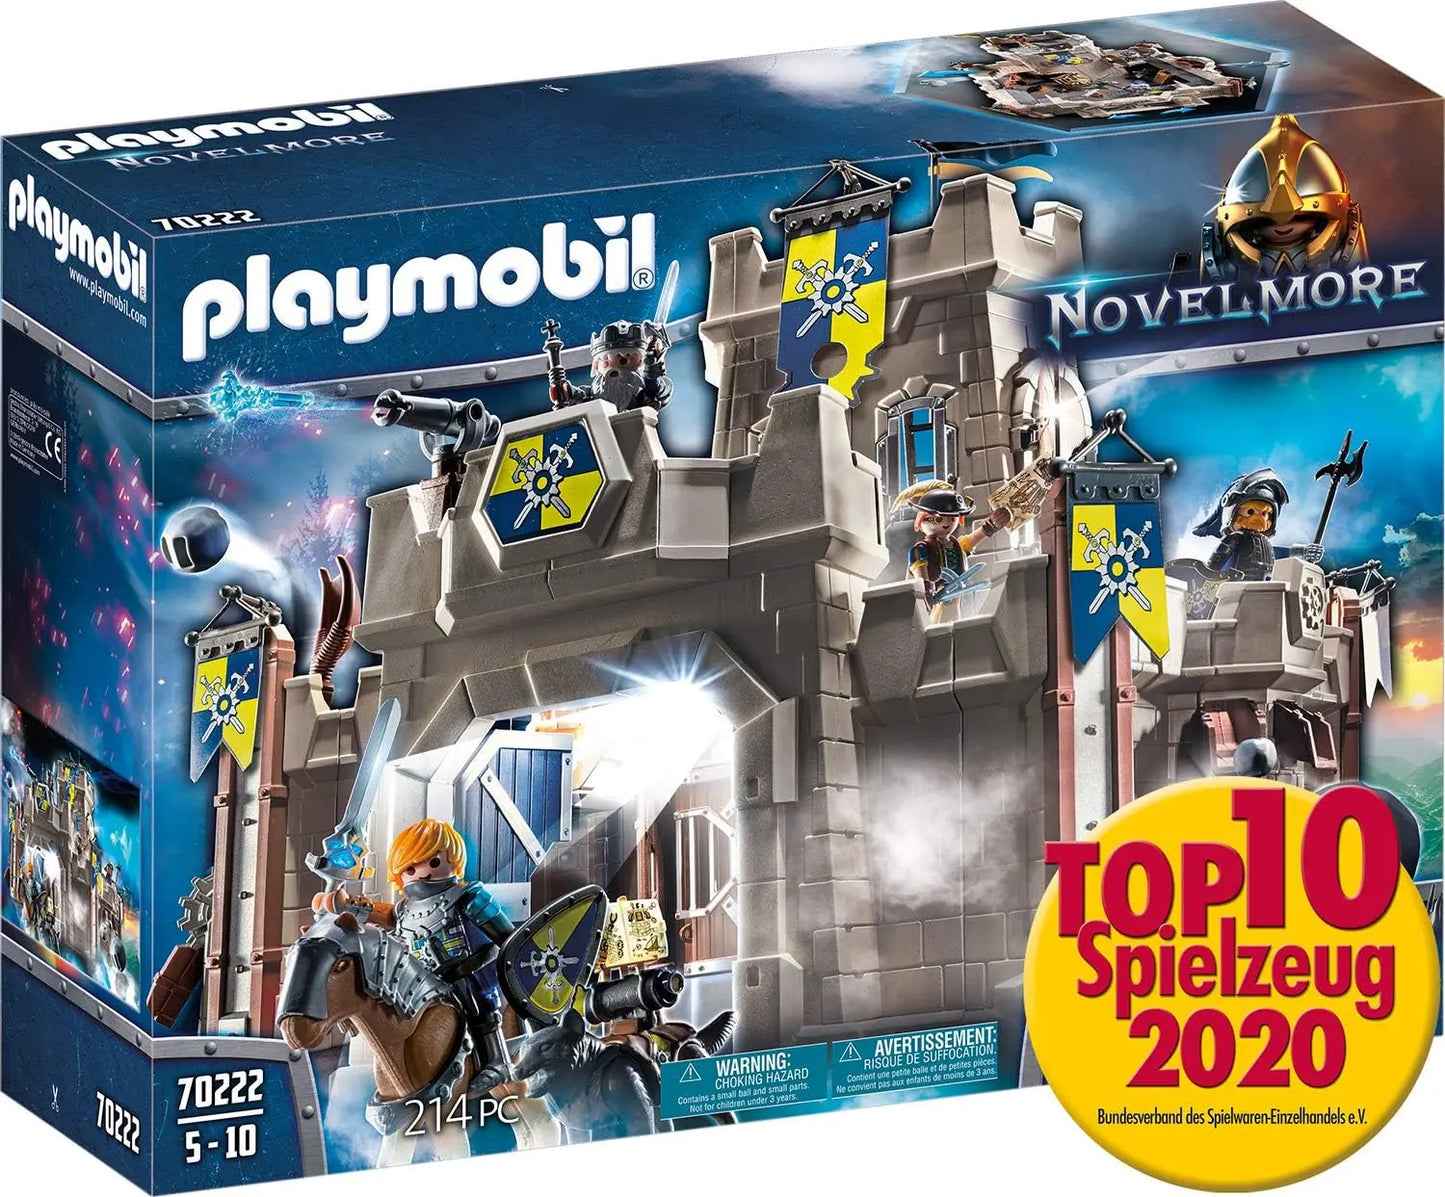 Jouetq pour enfant 70222 Playmobil Citadelle des Chevaliers Novelmore playmobil